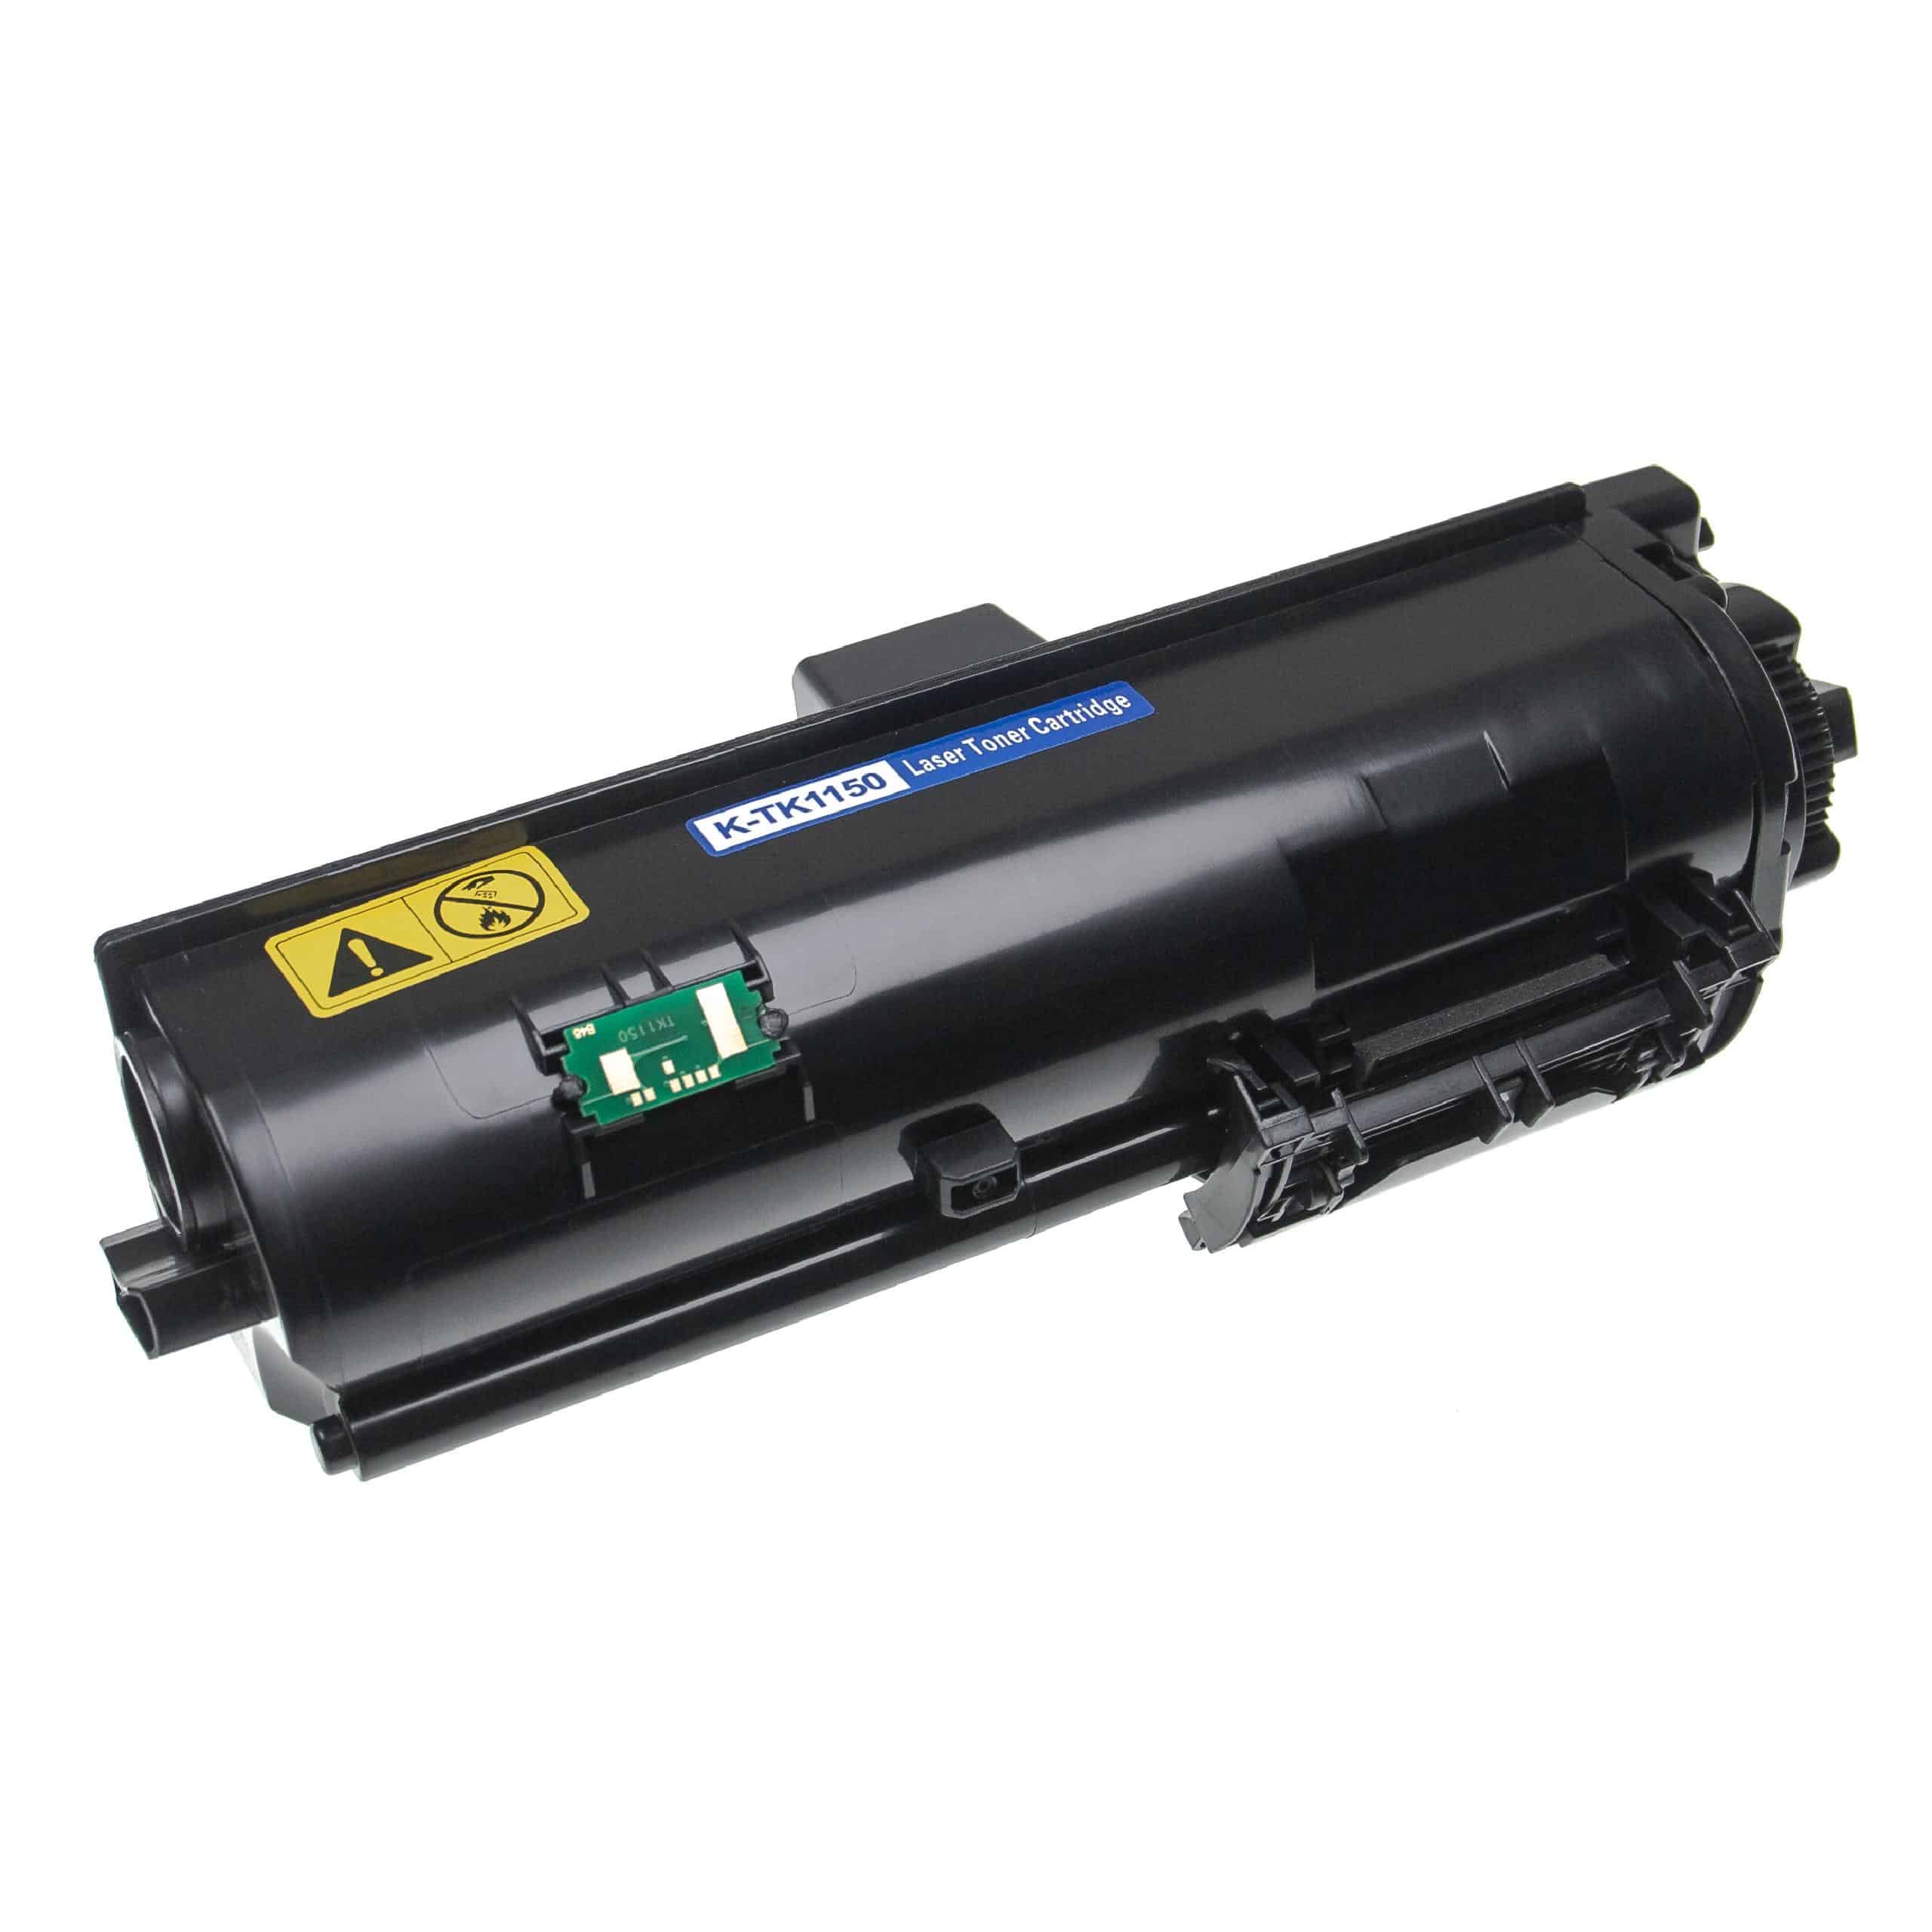 3x Cartouches de toner remplace Kyocera TK-1150 pour imprimante laser Kyocera, noir